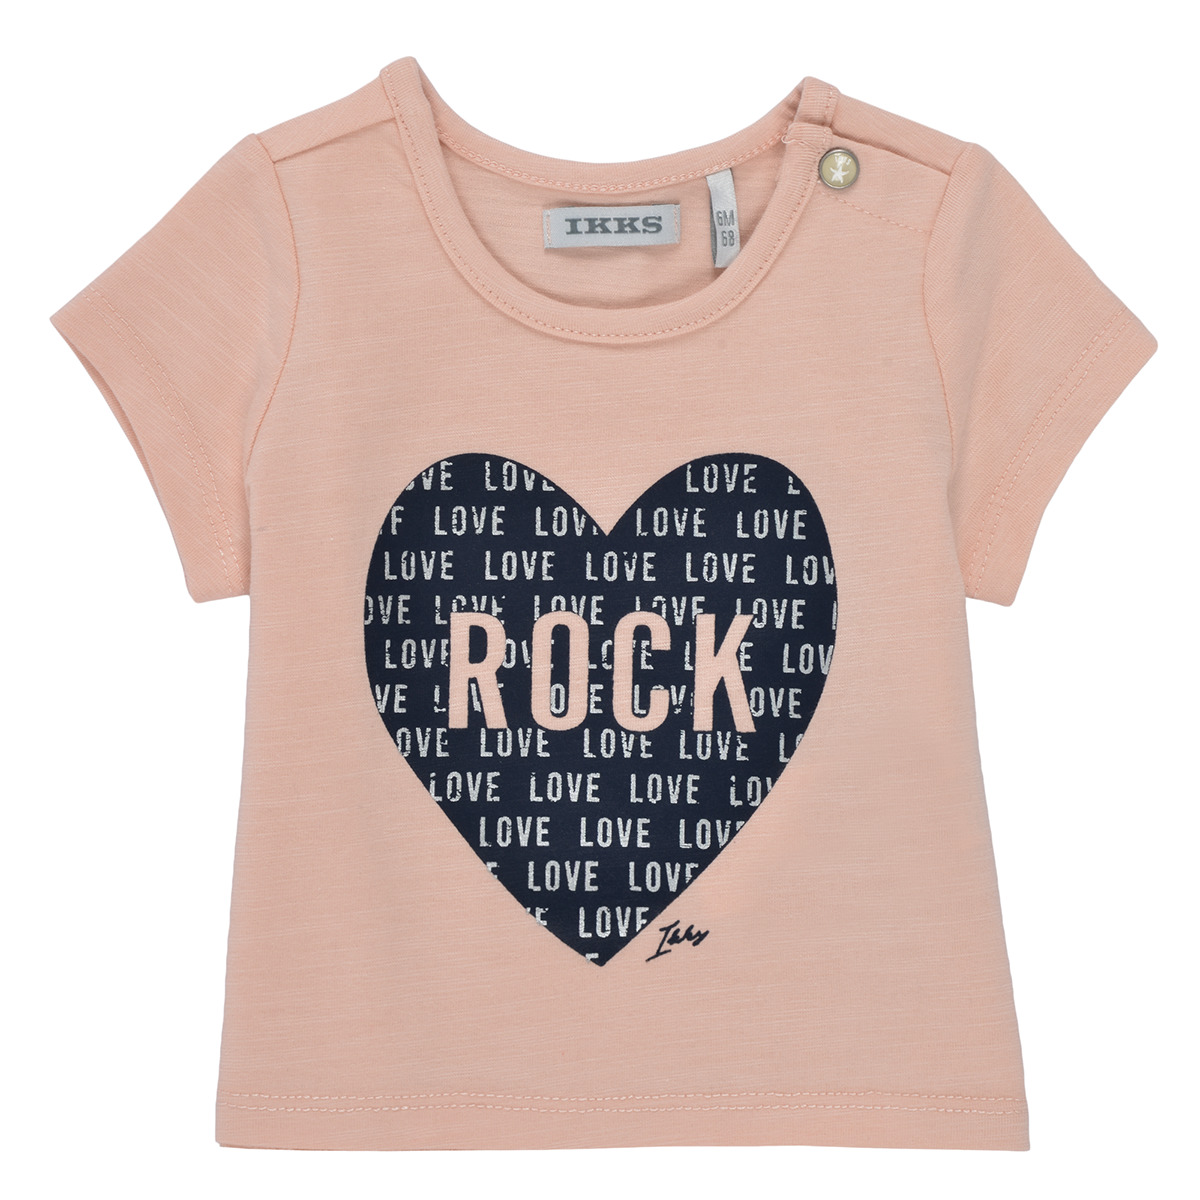 textil Flickor T-shirts Ikks XS10120-31 Rosa